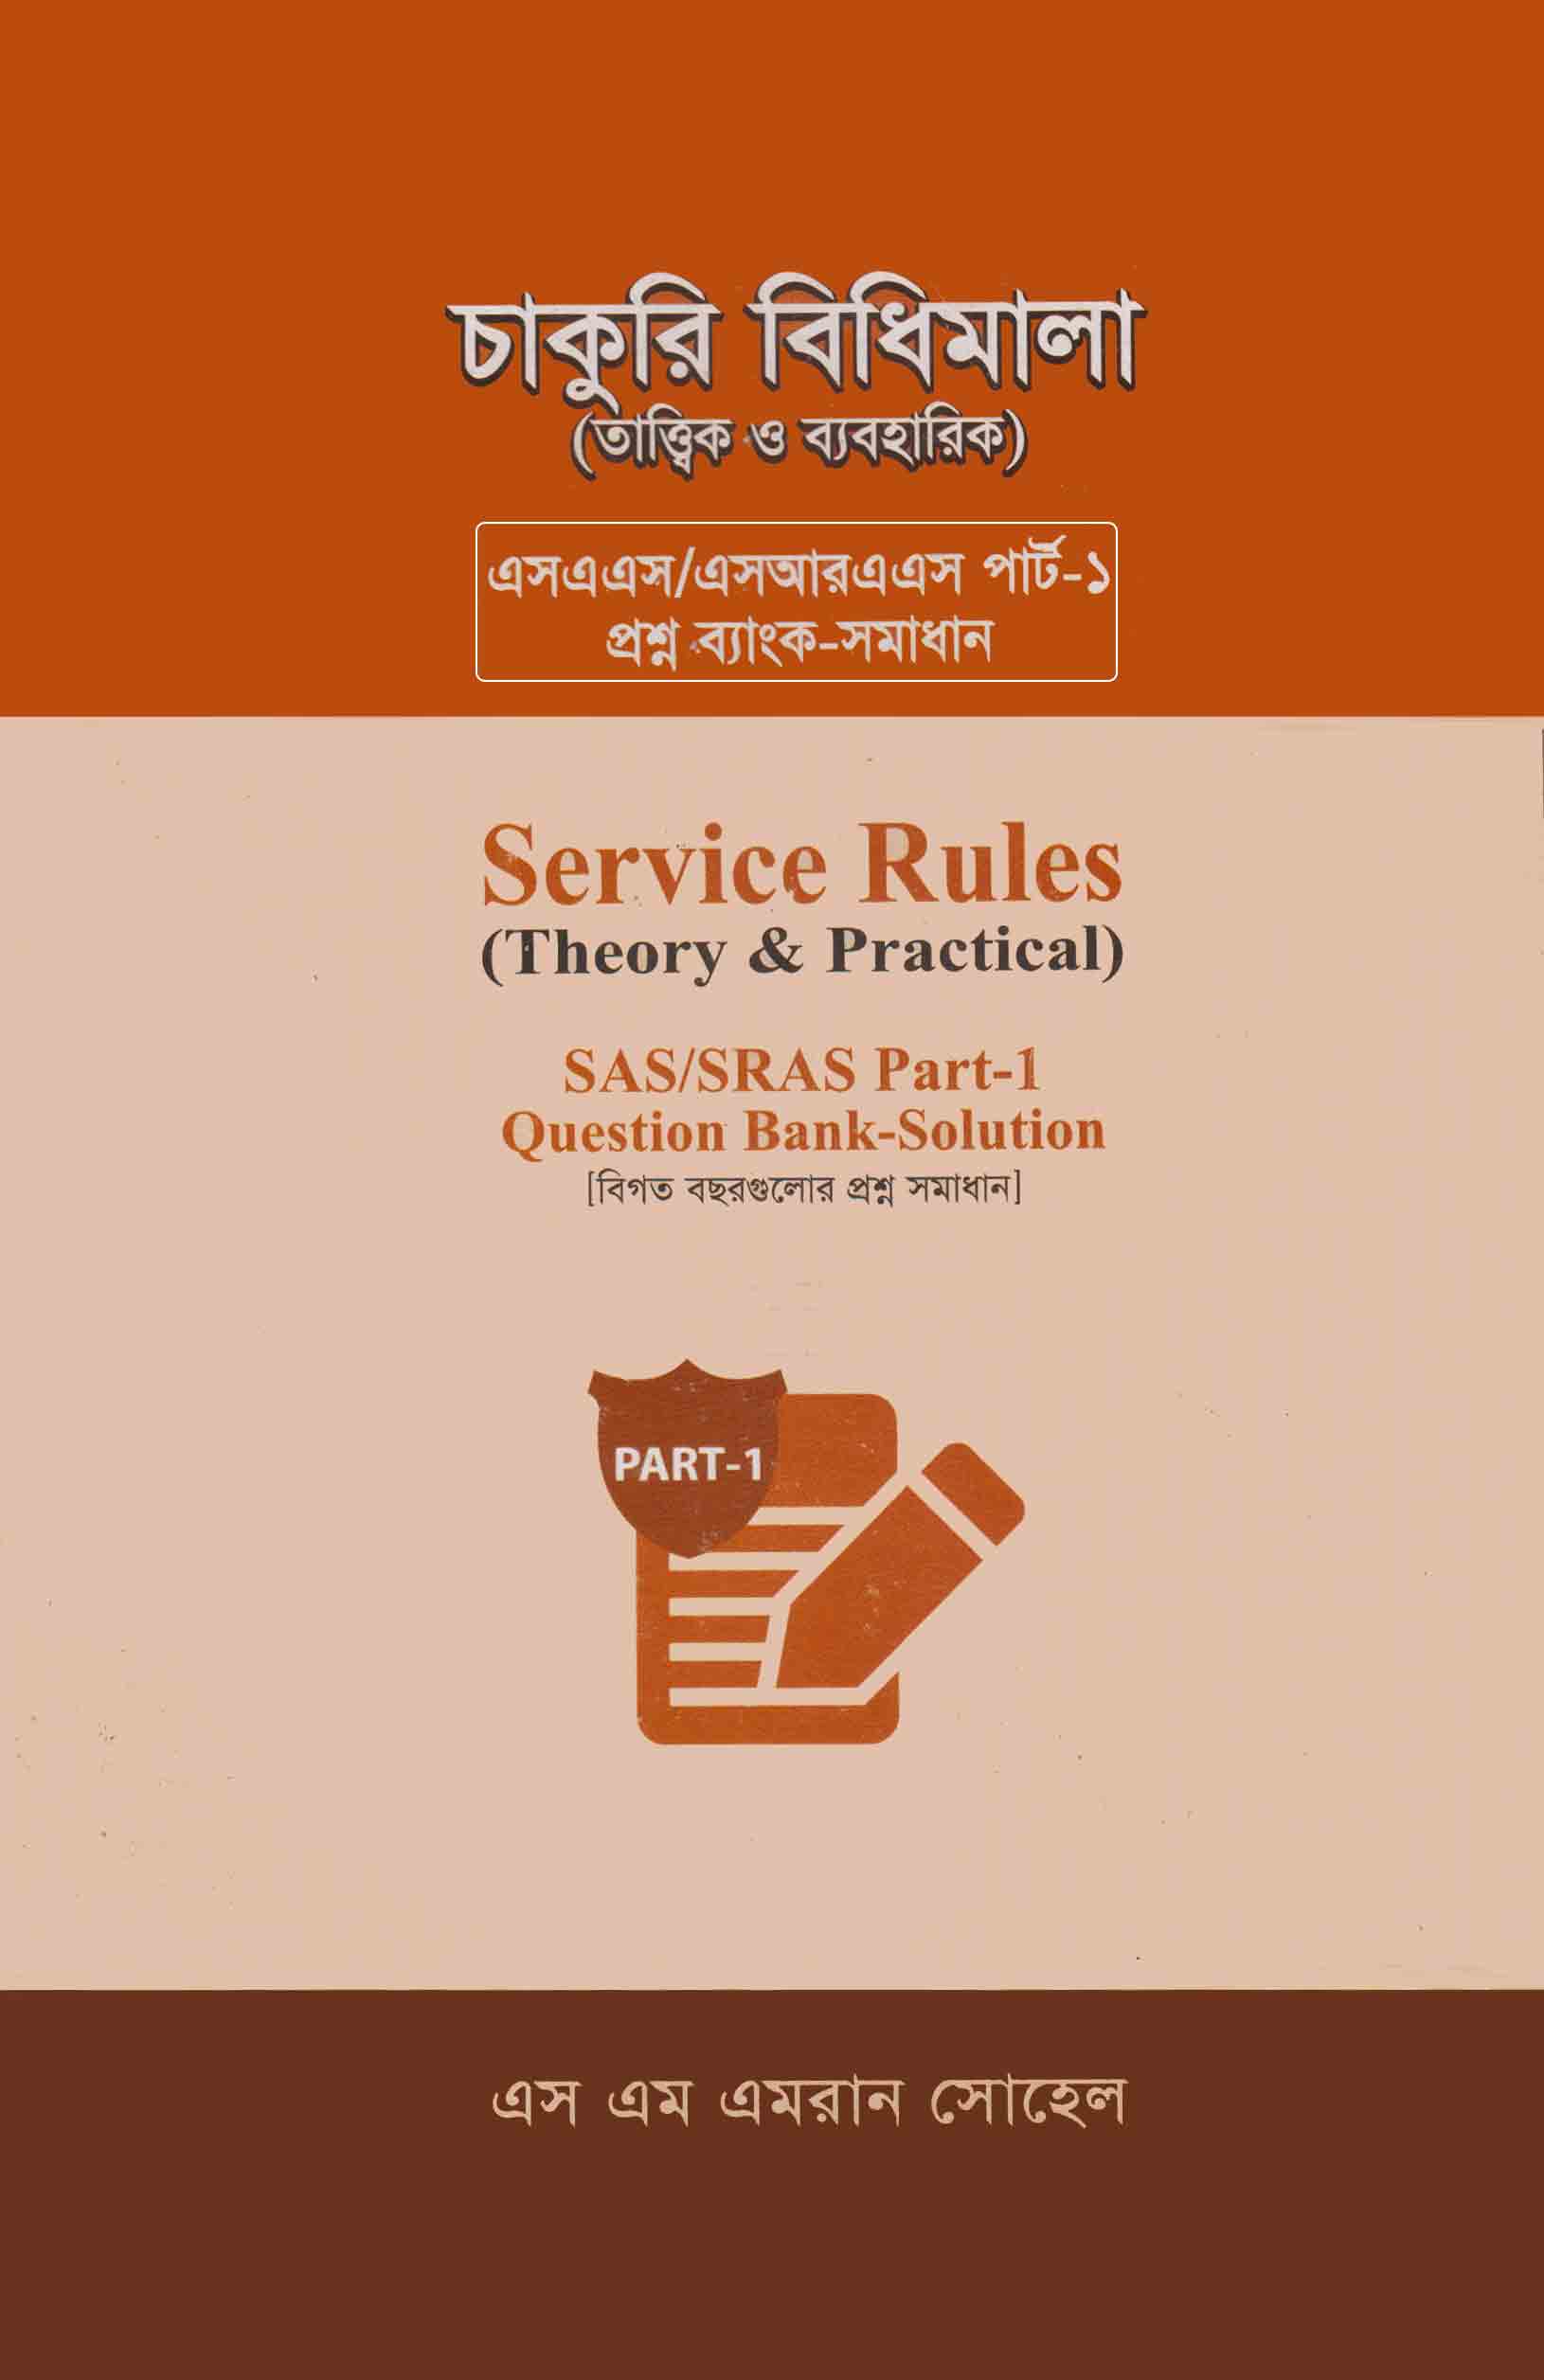 চাকুরি বিধিমালা (তাত্ত্বিক ও ব্যবহারিক) [Service Rules (Theory & Practical)]